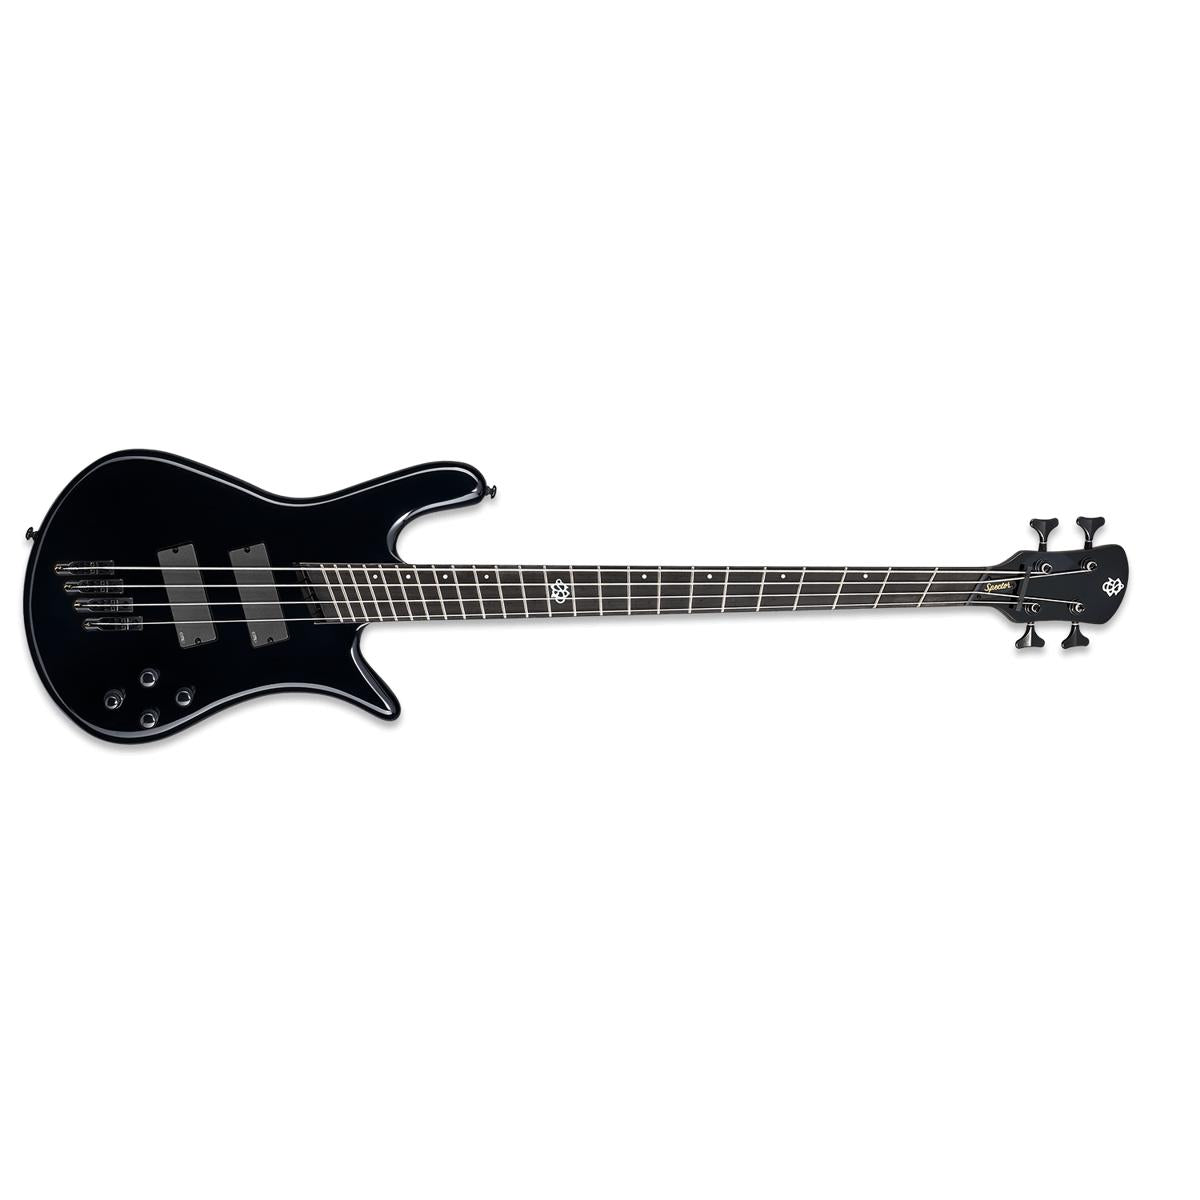 Spector NS Dimension HP 4 Bass Guitar Multi-Scale Black Gloss w/ EMGs & Darkglass Tone Capsule - NSDM4BK